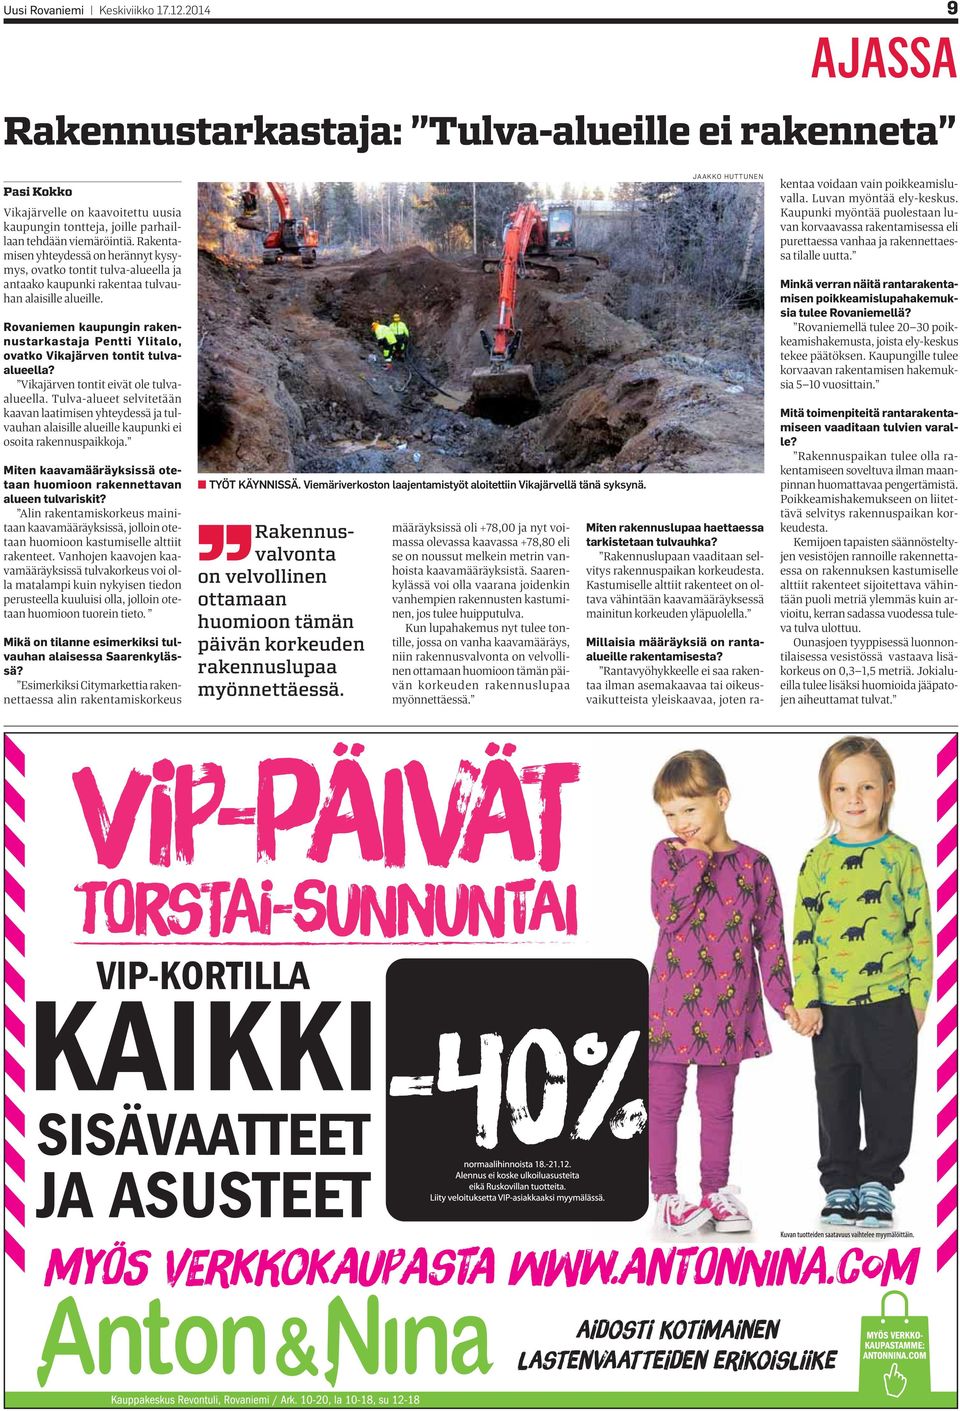 Rovaniemen kaupungin rakennustarkastaja Pentti Ylitalo, ovatko Vikajärven tontit tulvaalueella? Vikajärven tontit eivät ole tulvaalueella.